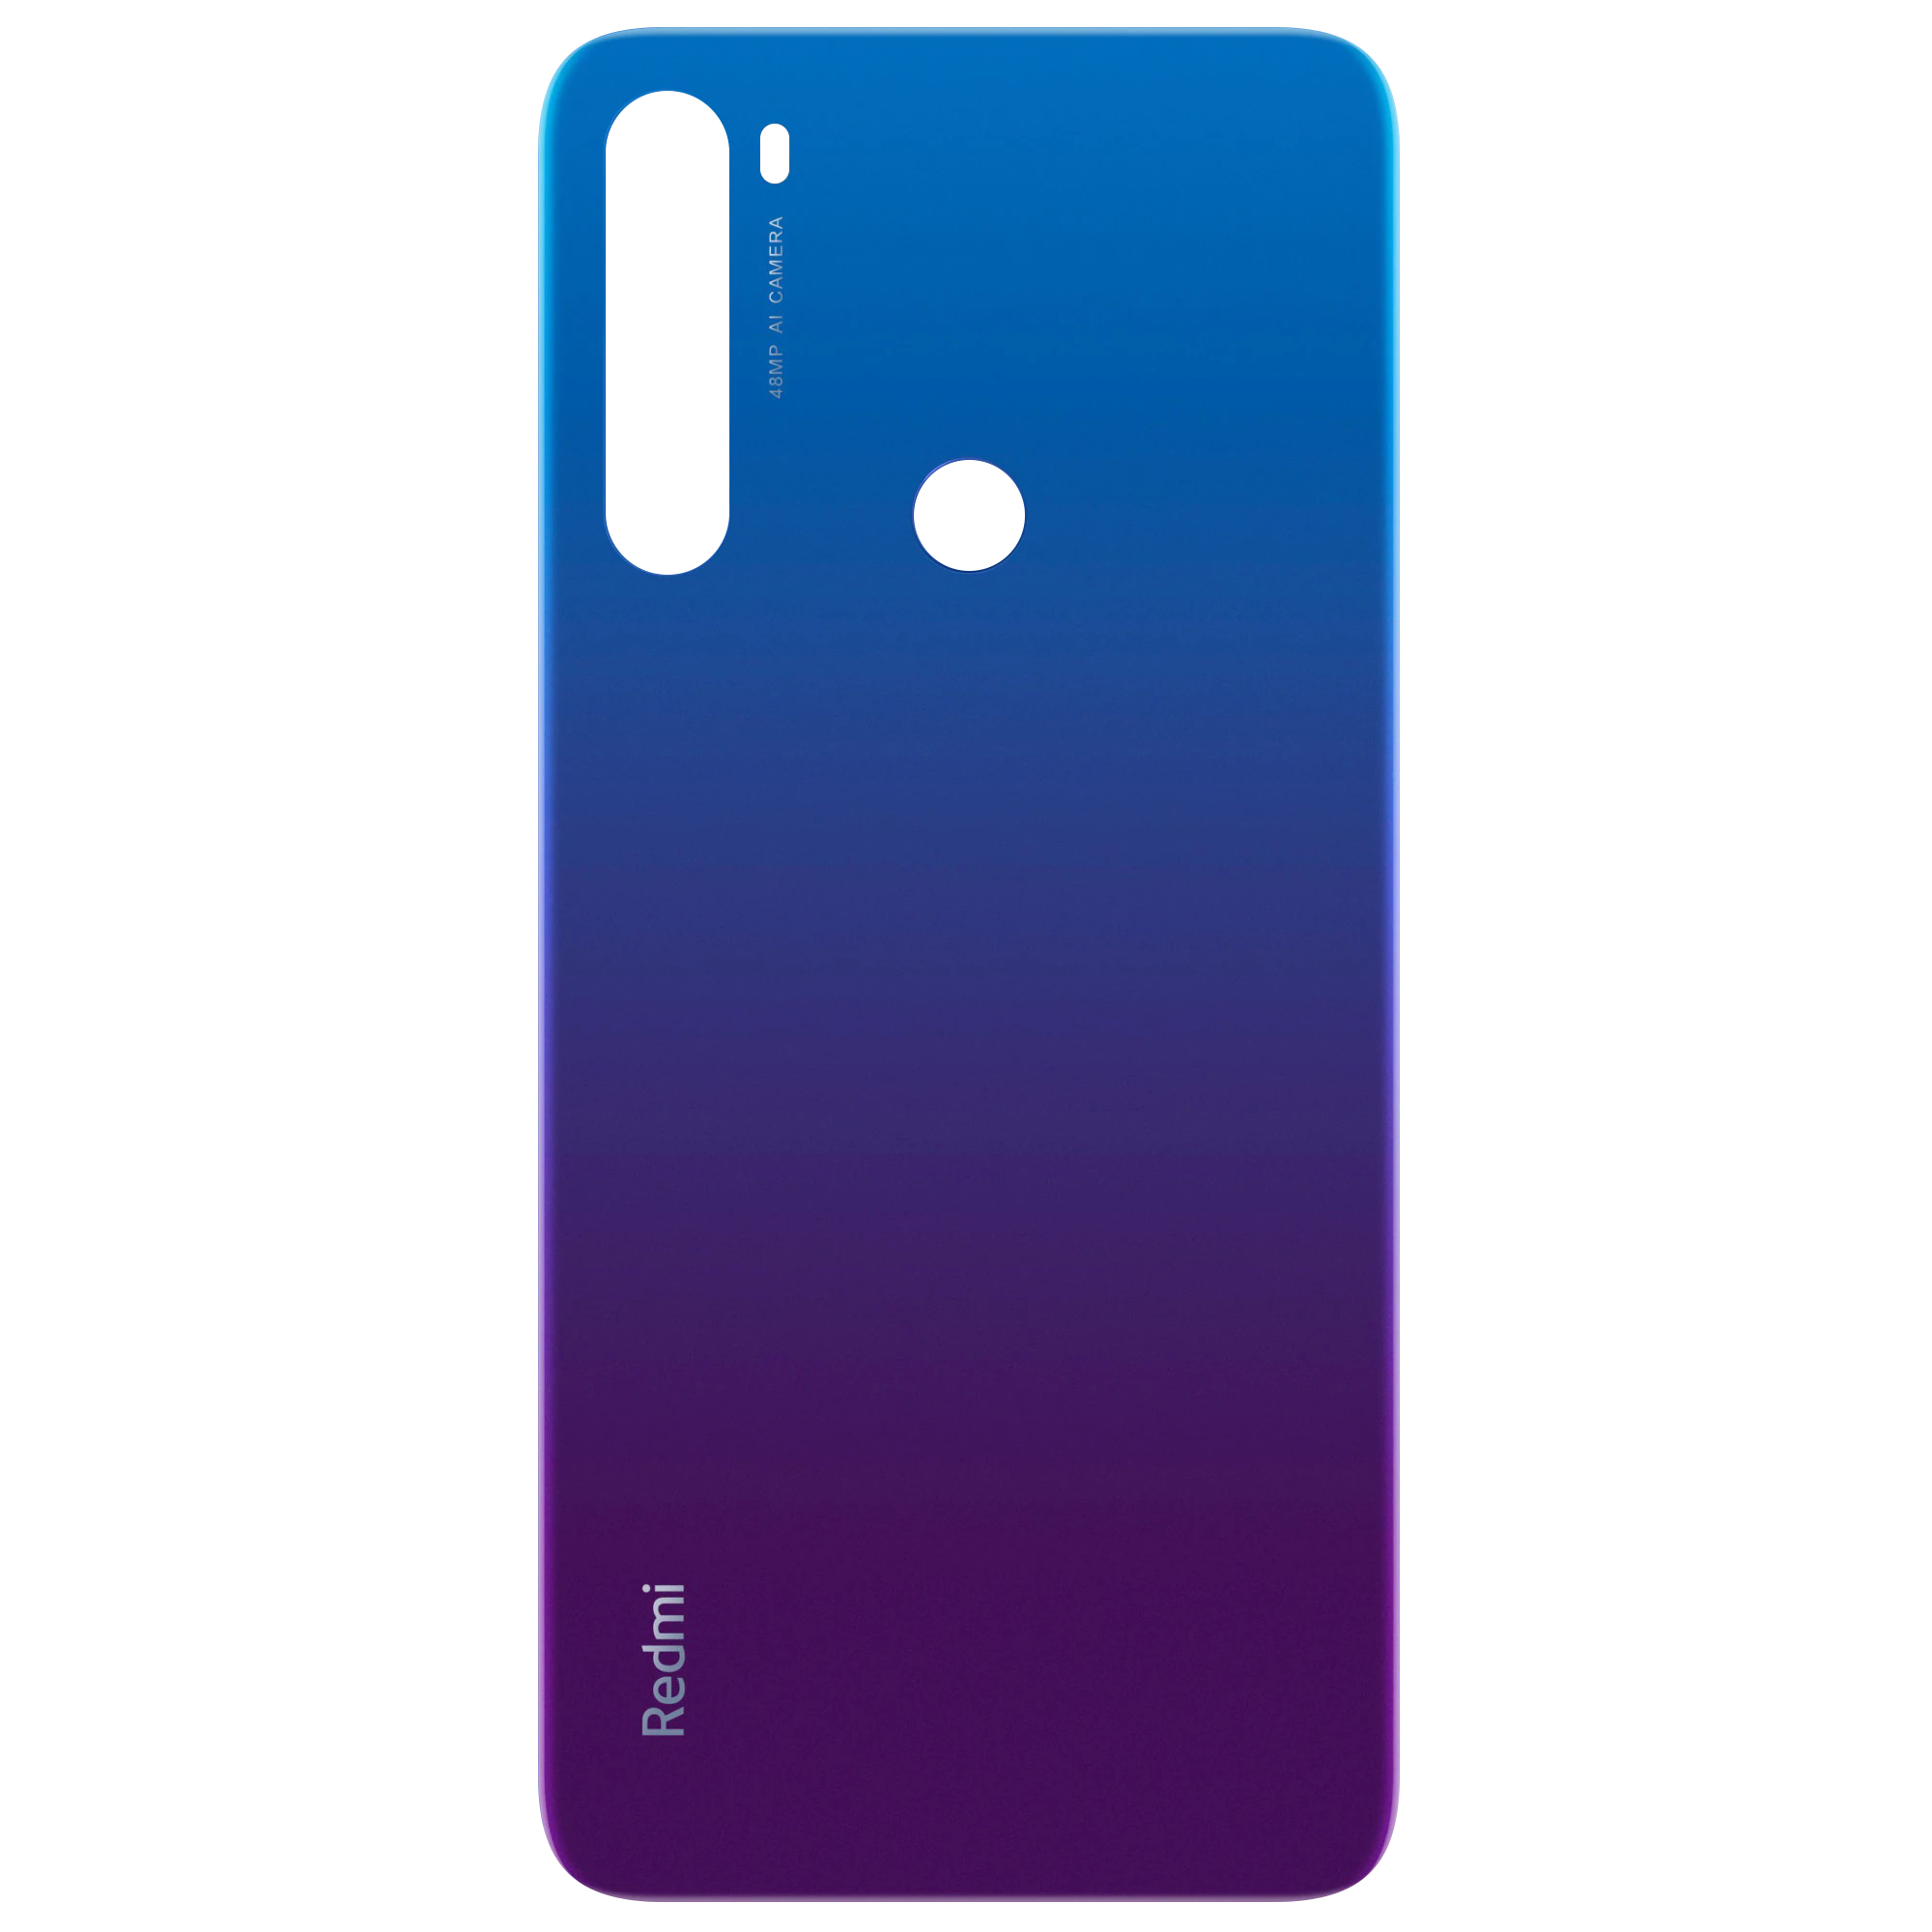 Capac Baterie Xiaomi Redmi Note 8T, Albastru (Starscape Blue), Service Pack 550500000D6D 